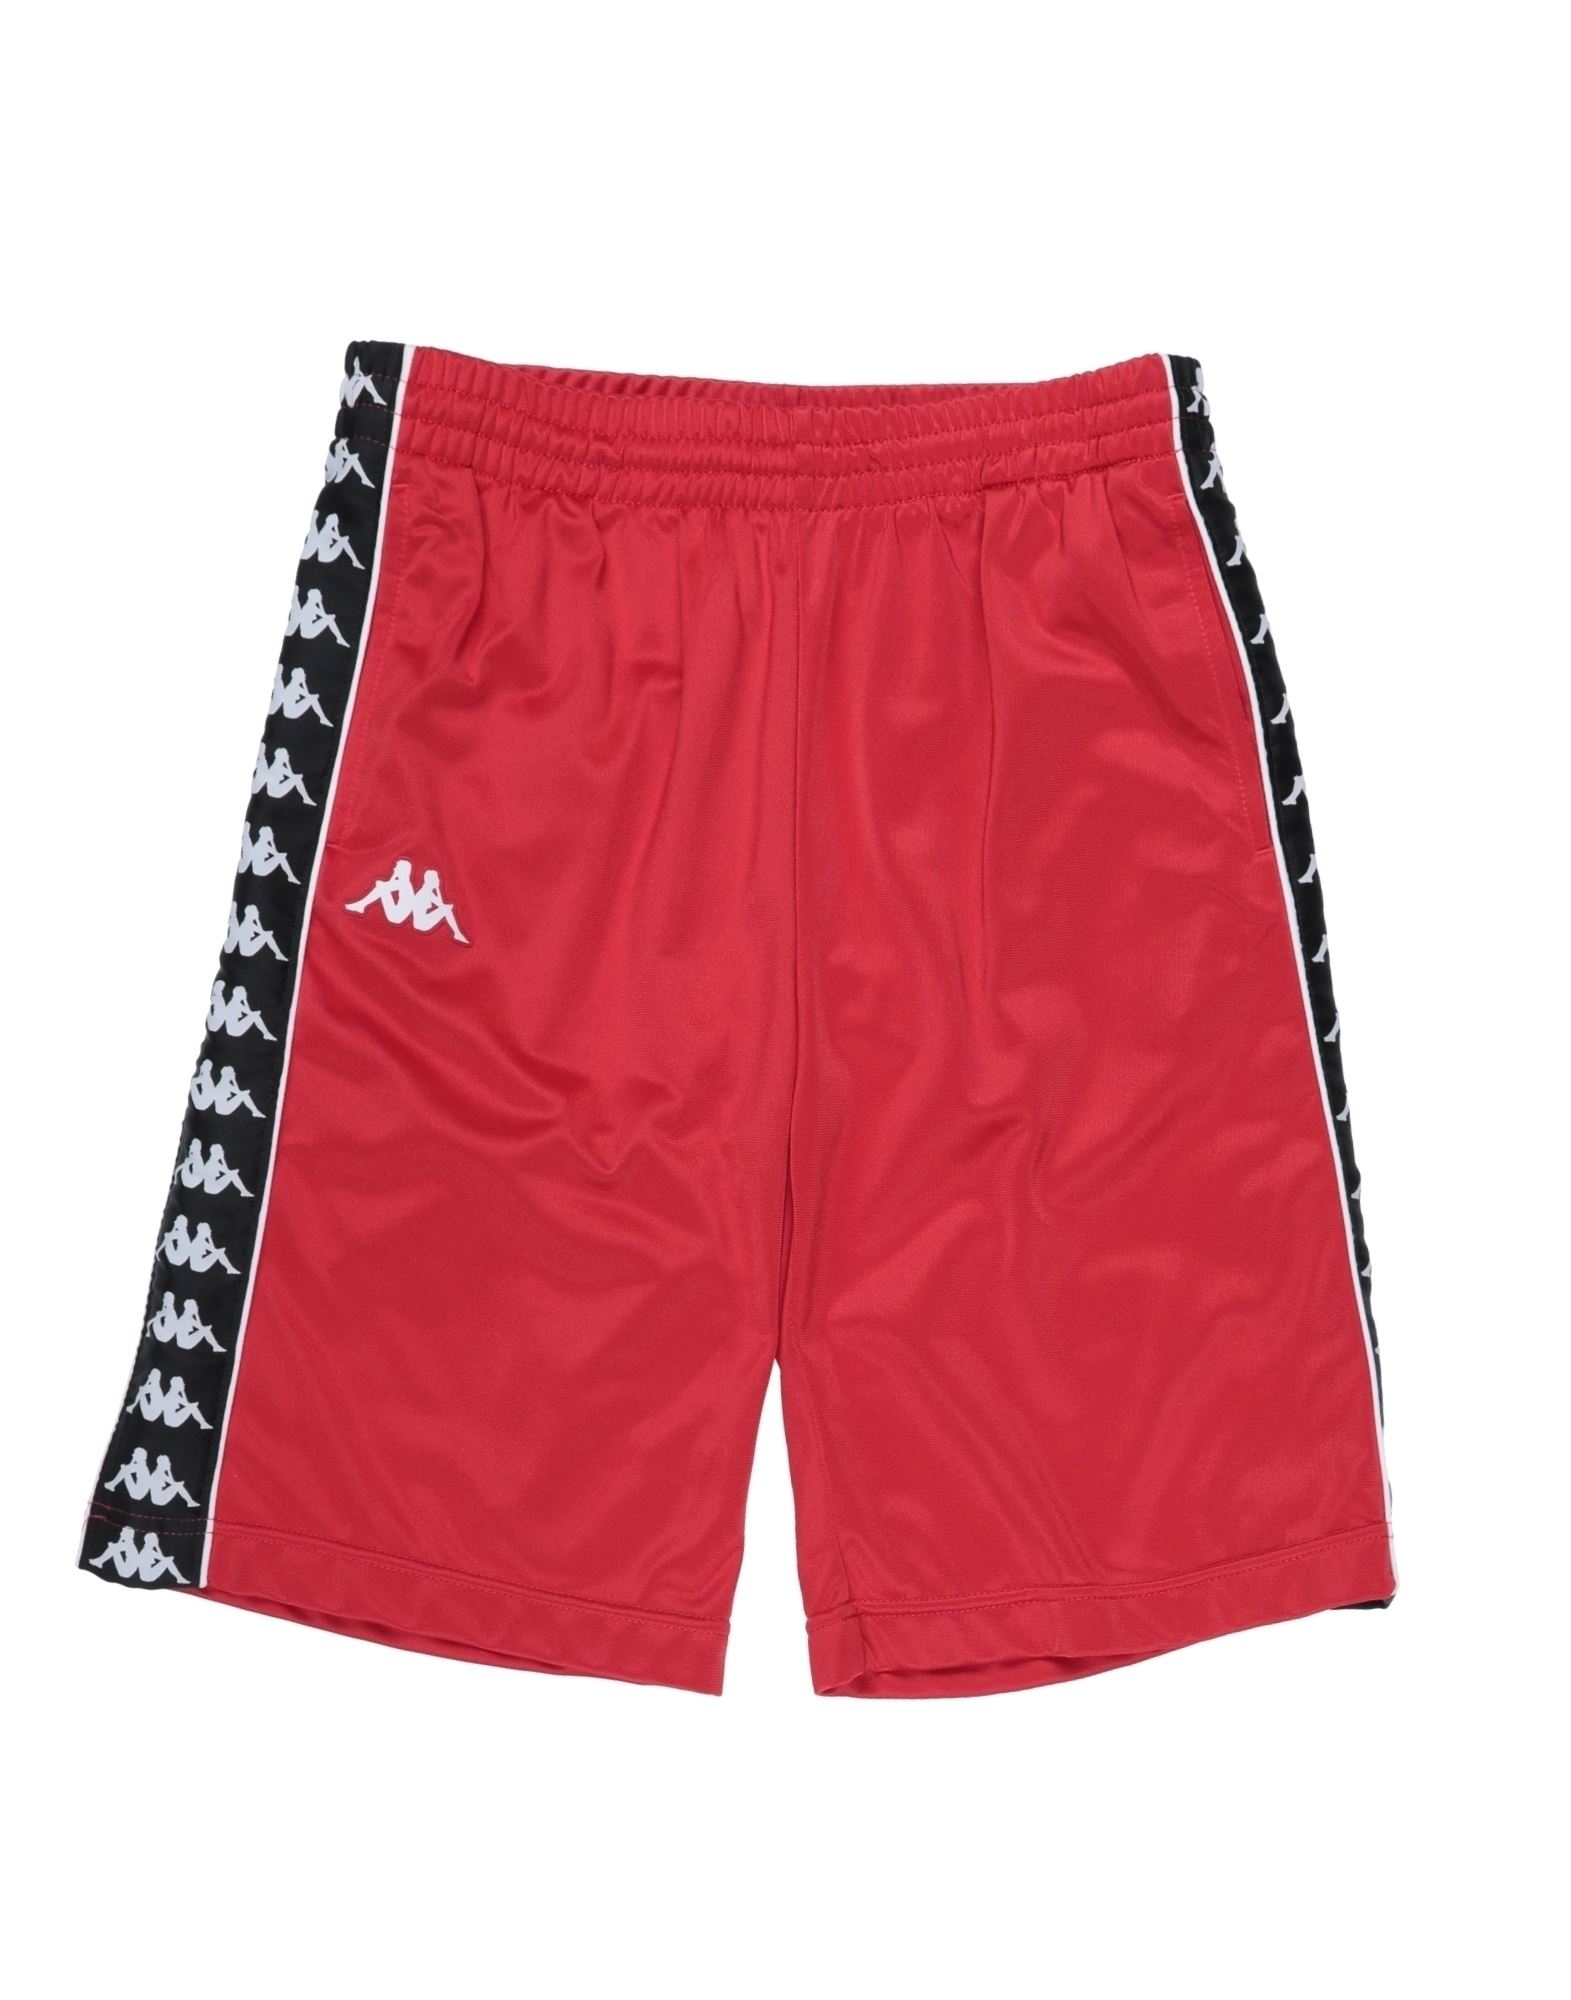 Kappa Kids'  Toddler Boy Shorts & Bermuda Shorts Red Size 3 Polyester